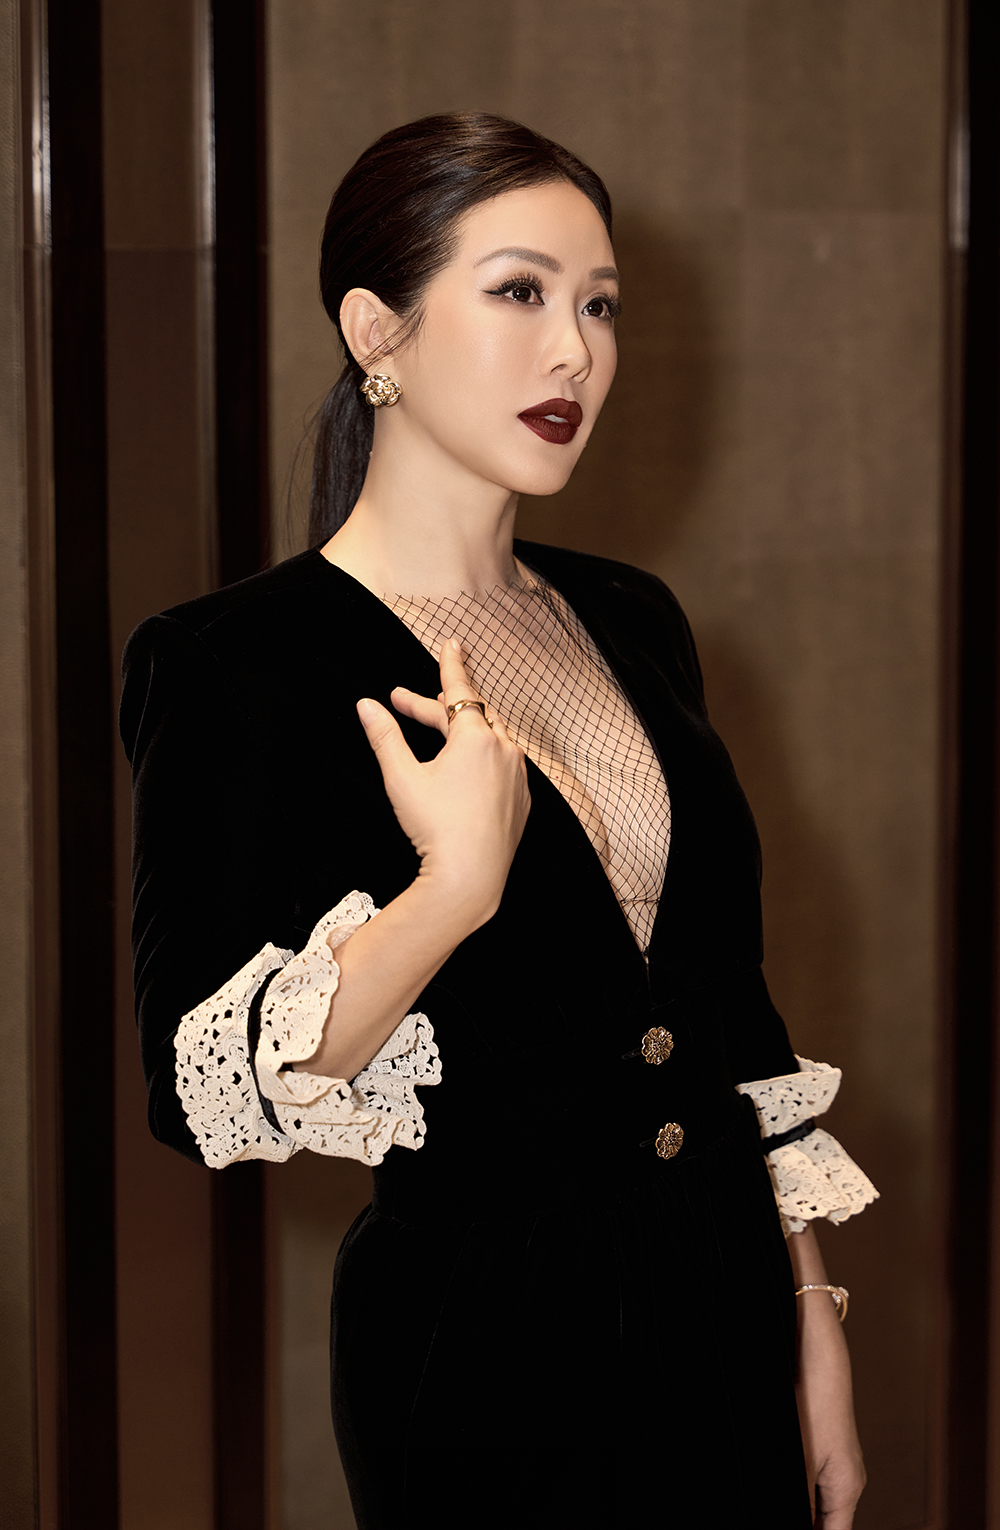 Hoa hậu Thu Hoài vừa tham dự sự kiện giới thiệu chương trình thời trang “Giao hoà – Armonia” của NTK Hoàng Hải